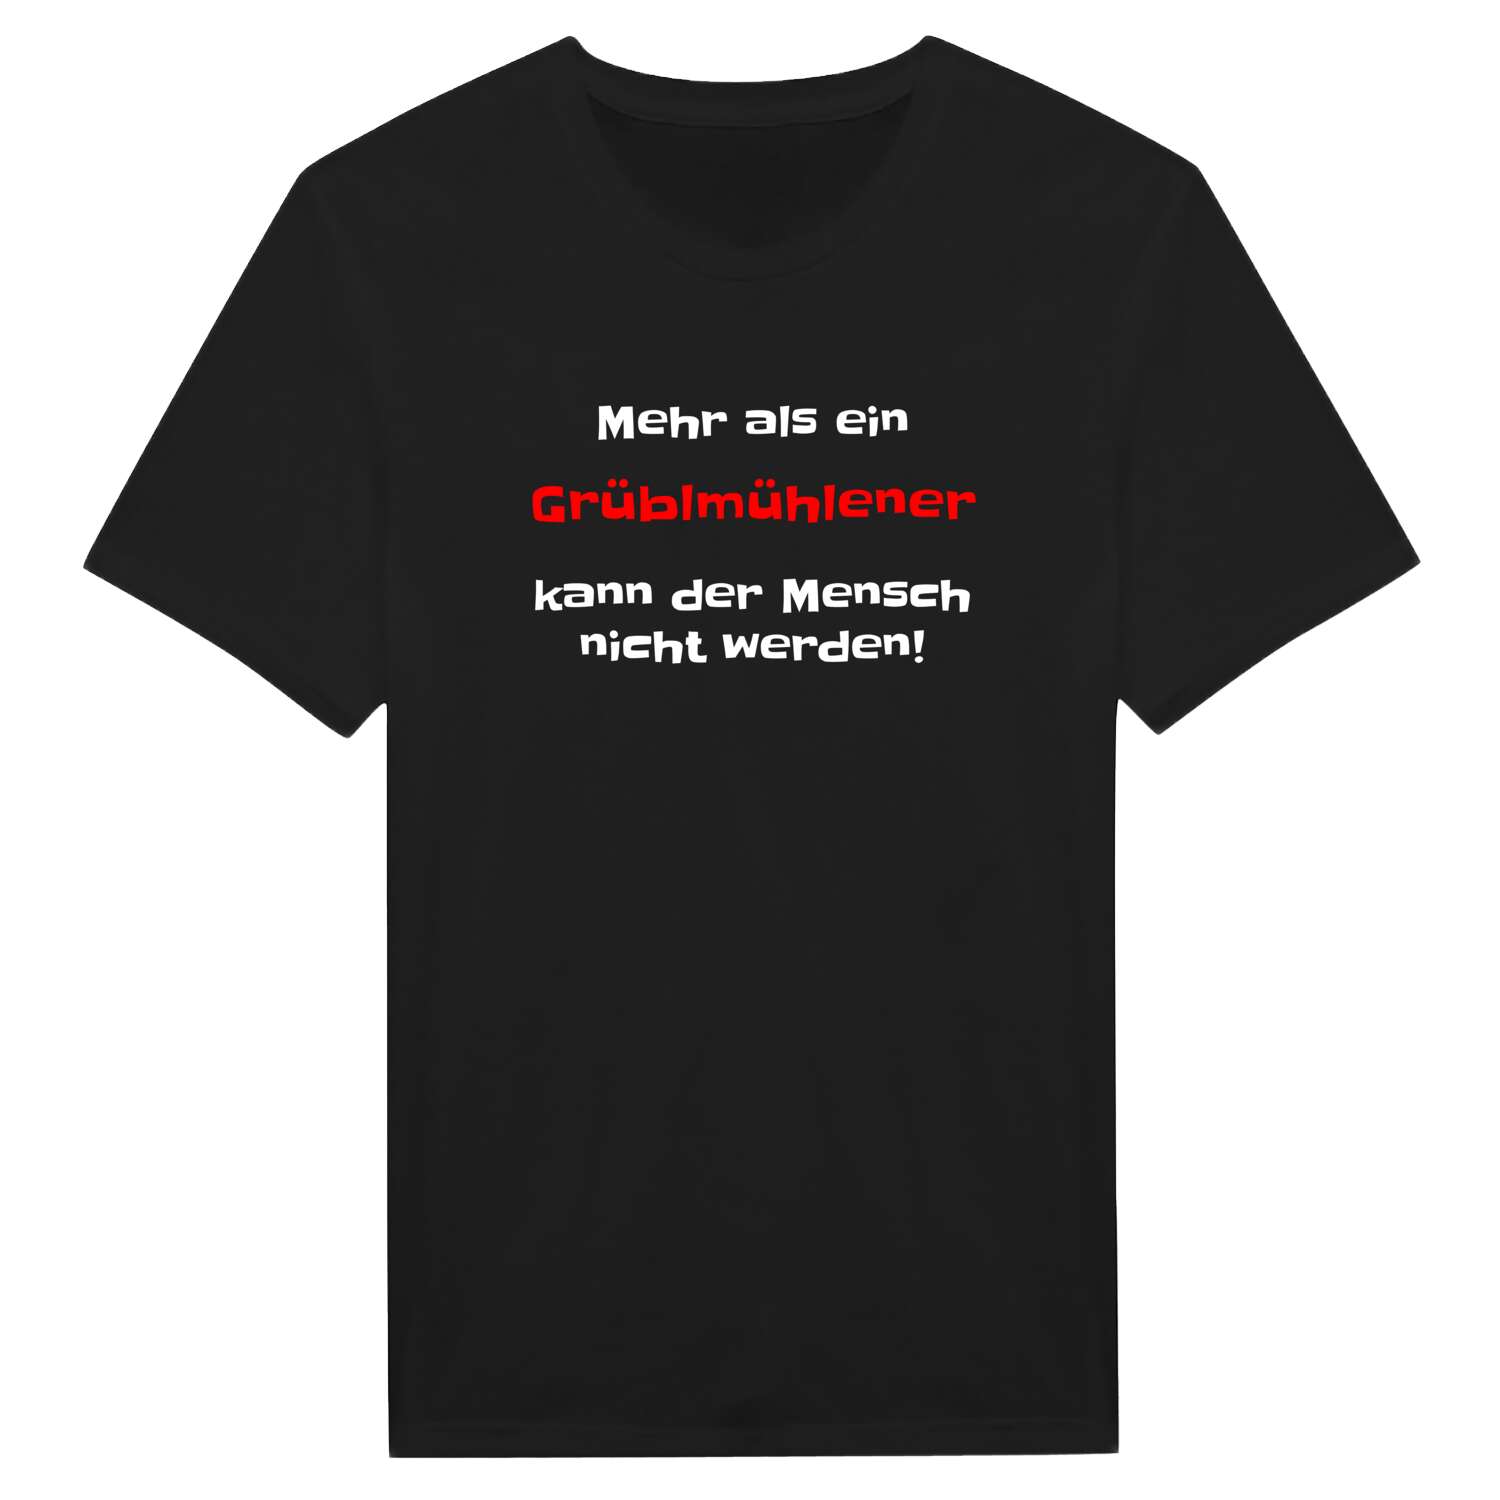 Grüblmühle T-Shirt »Mehr als ein«